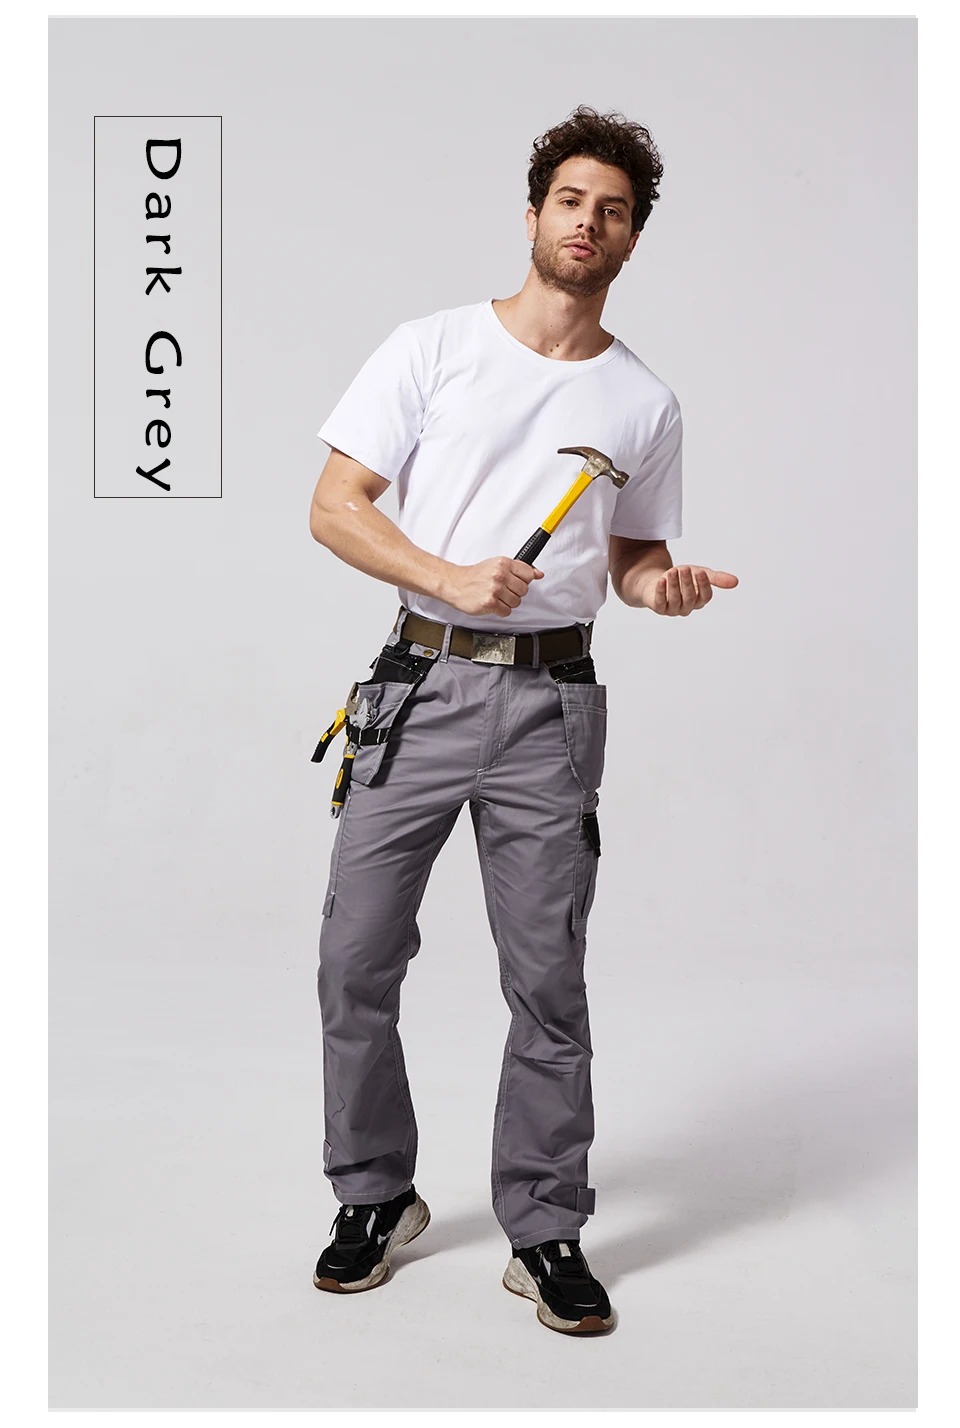 Bauskydd B218 рабочая одежда мужские рабочие брюки осень темно-серый мульти инструмент карманы одежда комбинезоны рабочие брюки